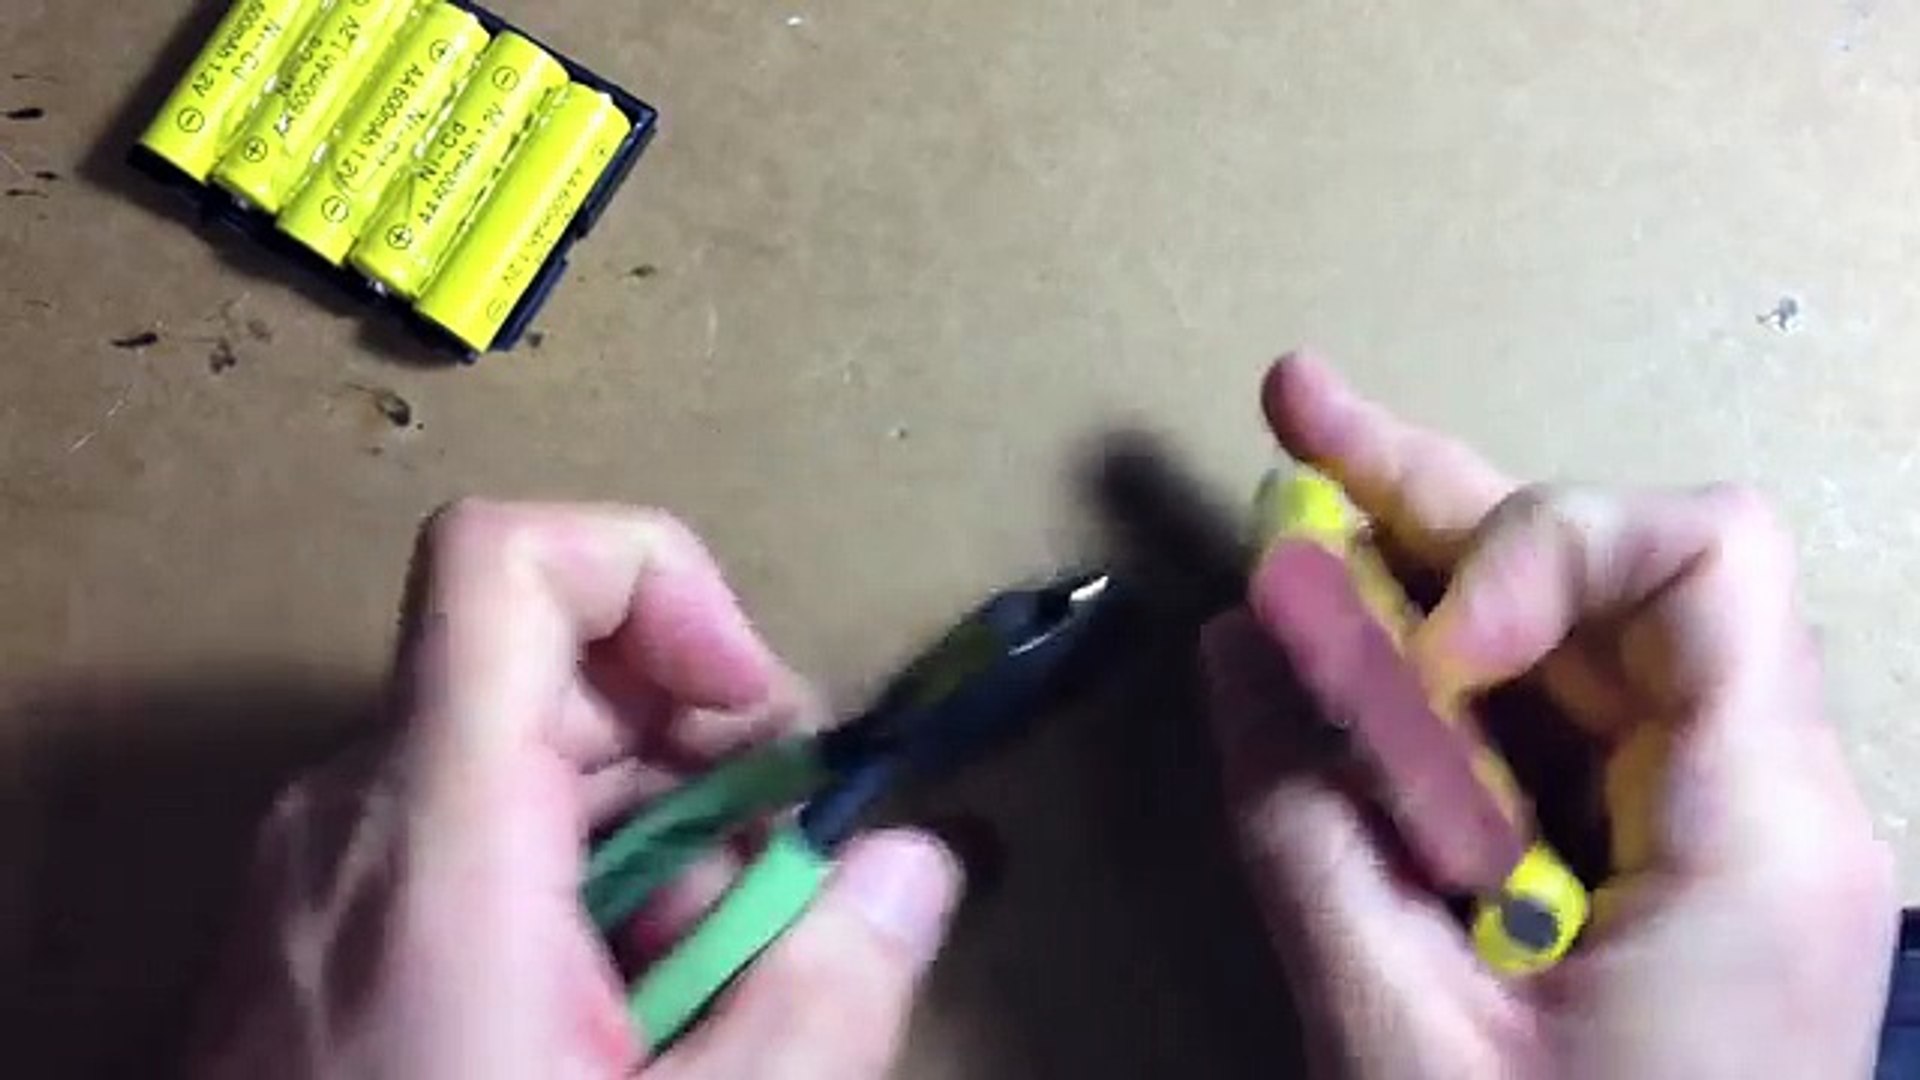 الدليل مقلق مزاد علني baterie nikko vaporizr 6 v - tayloredplacement.com